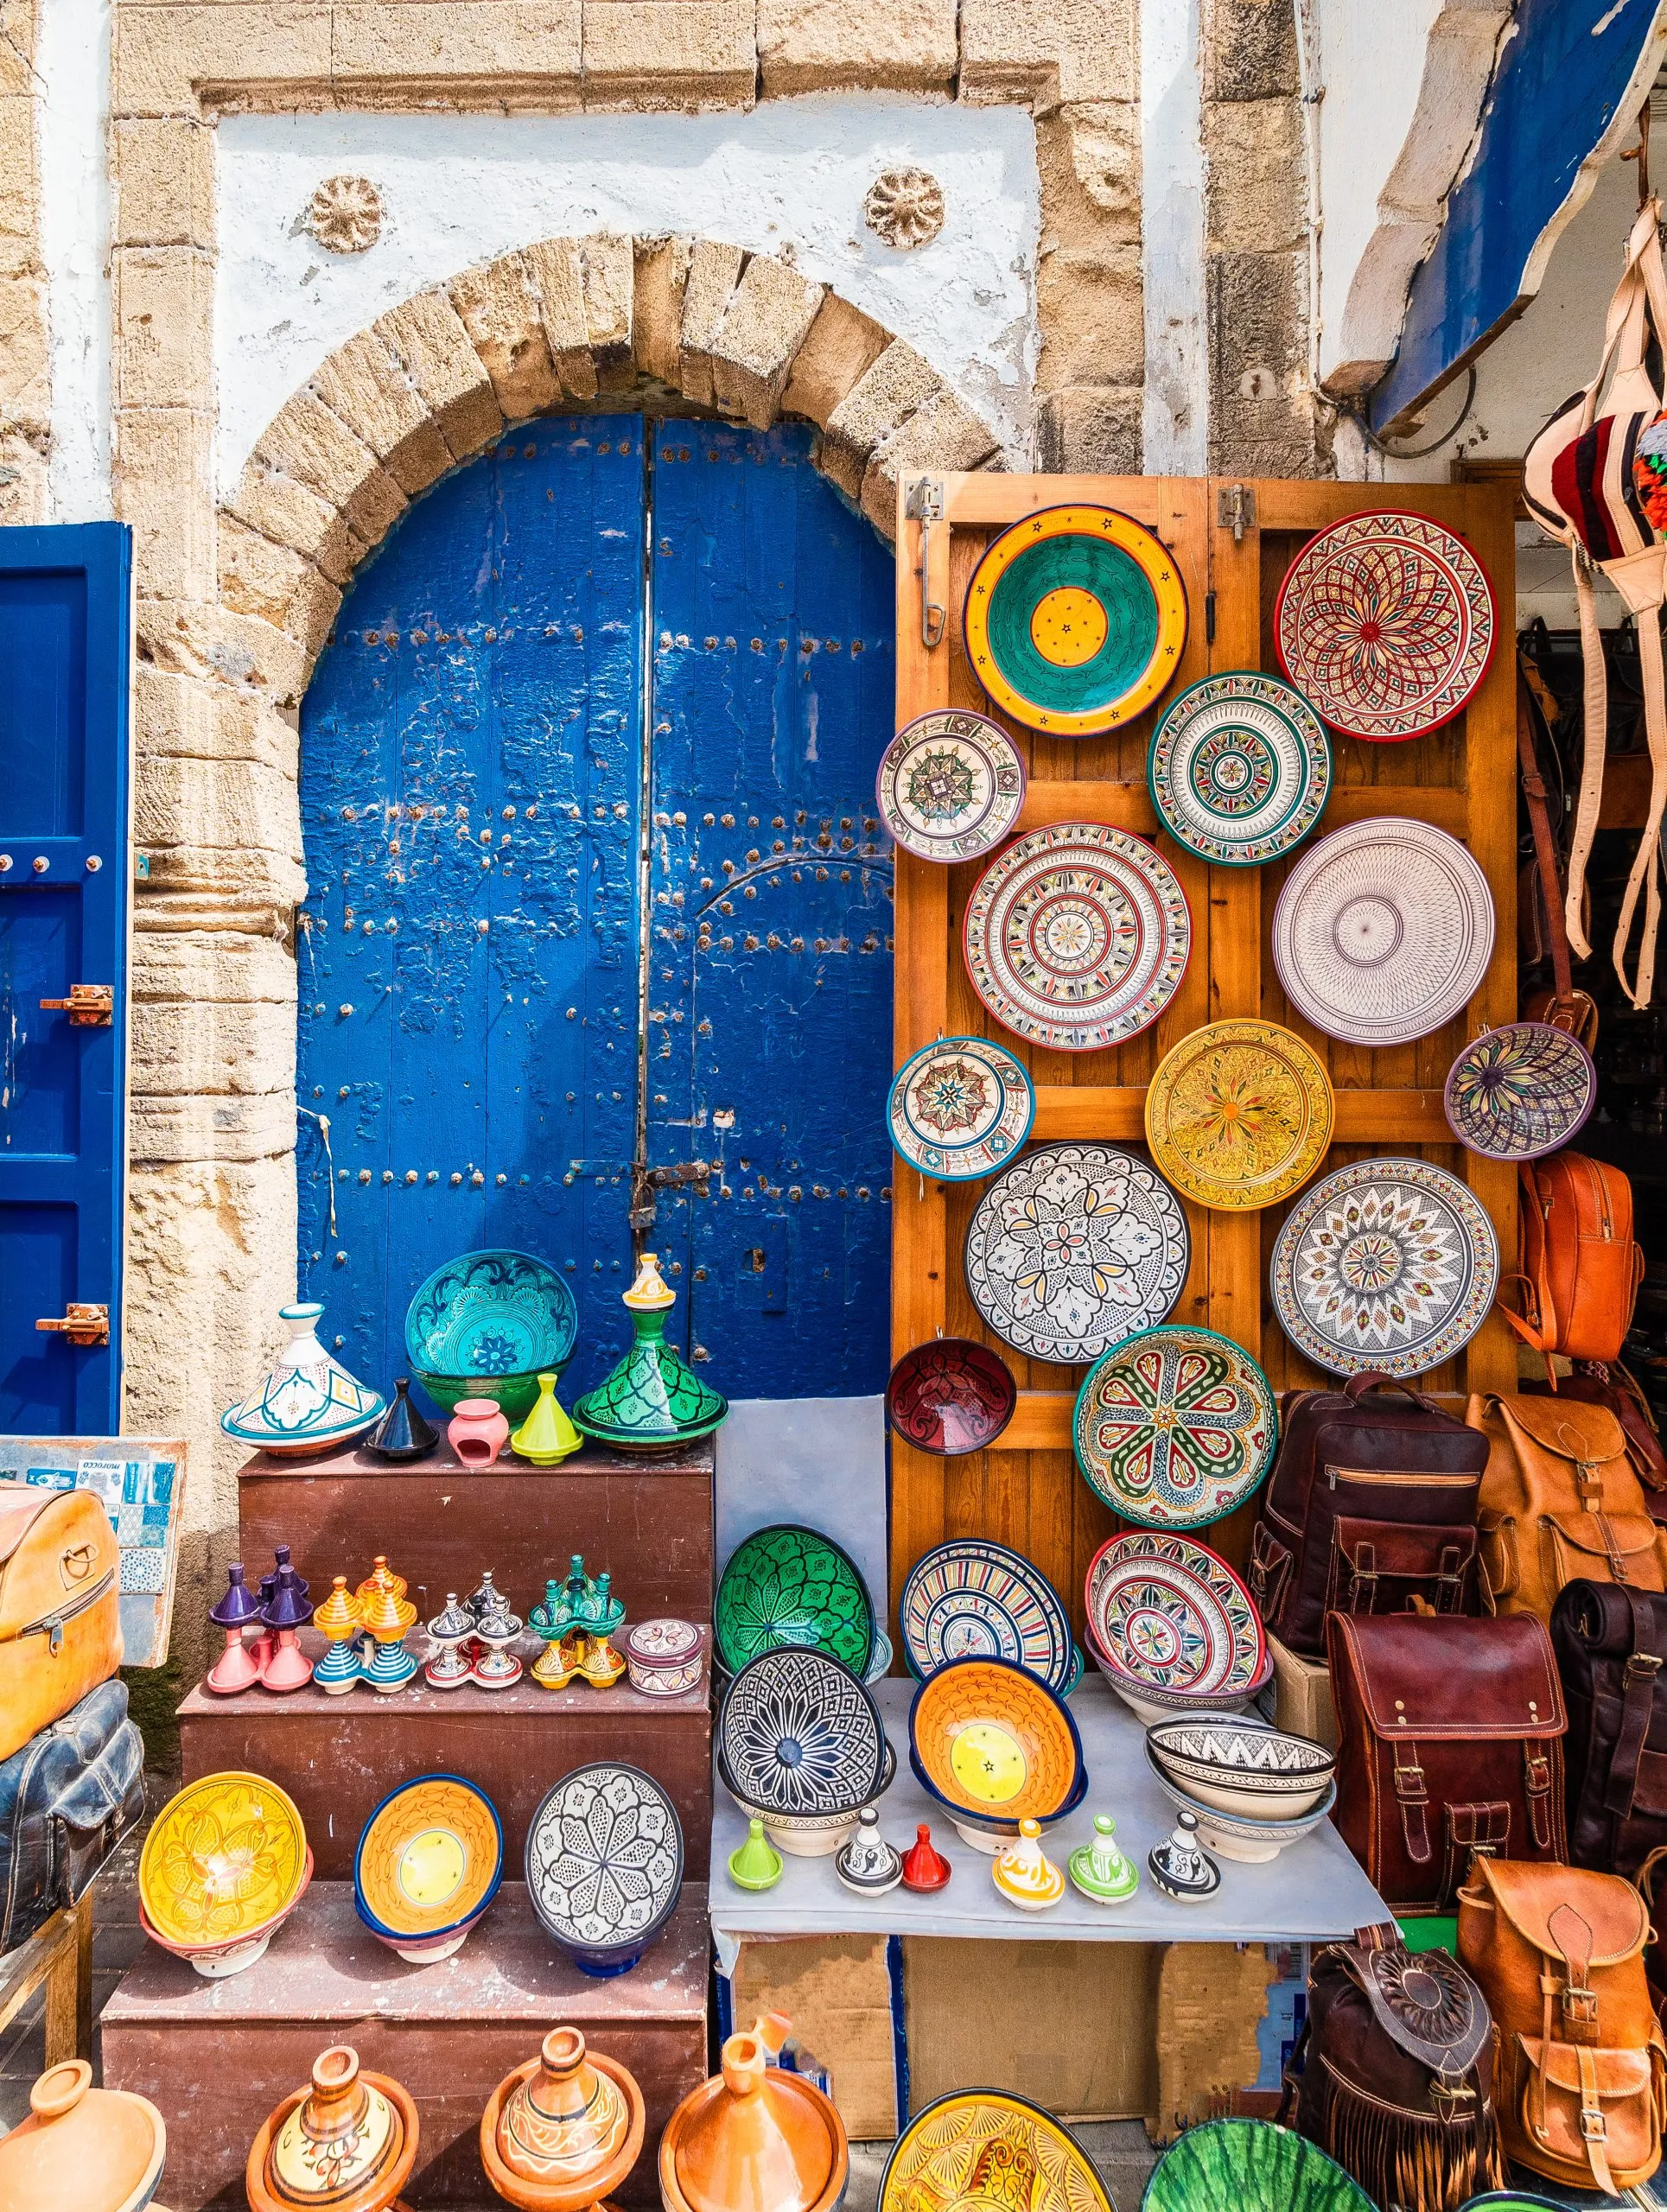 Souvenir market in old Medina of Essaouira, Morocco